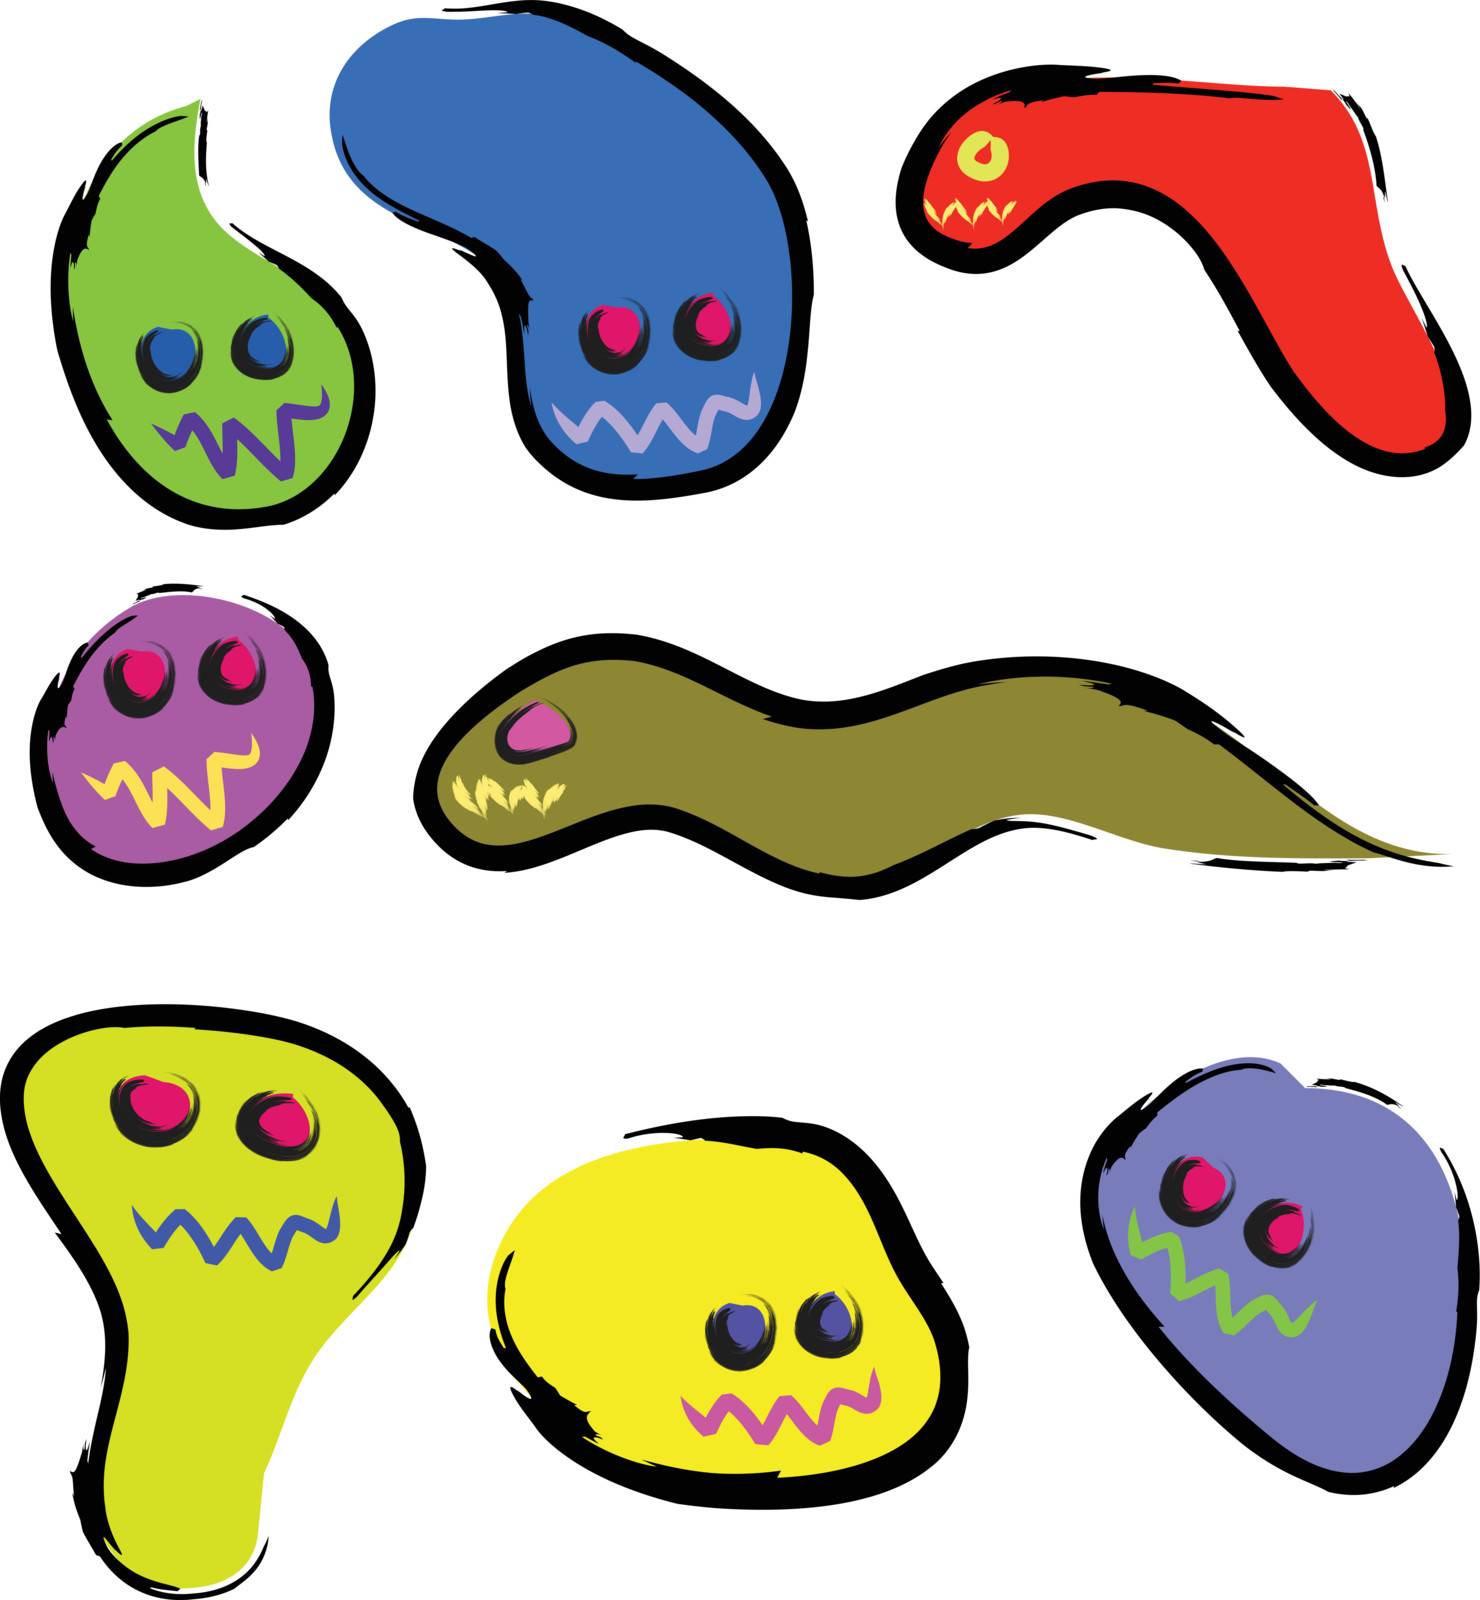 bacteria or virus cartoon sketch set